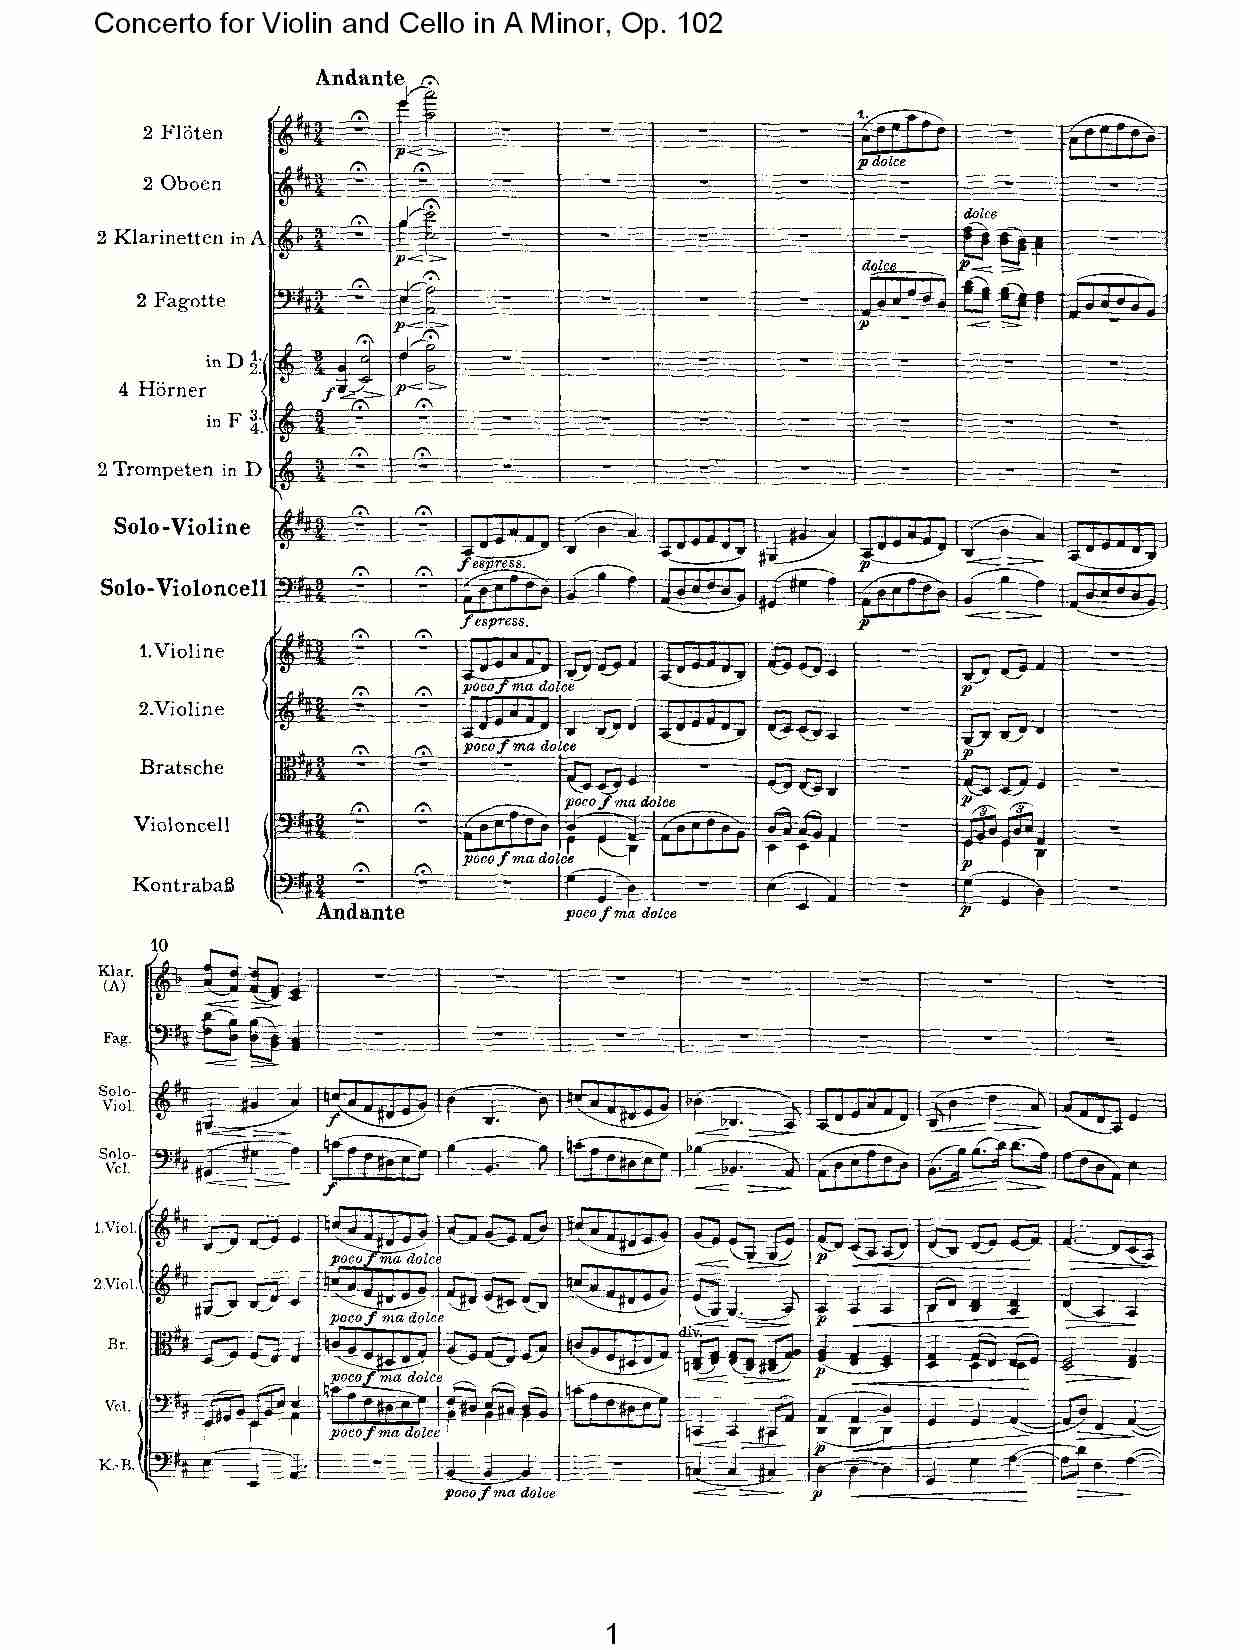 A小调小提琴与大提琴协奏曲, Op.102第二乐章（一）总谱（图1）